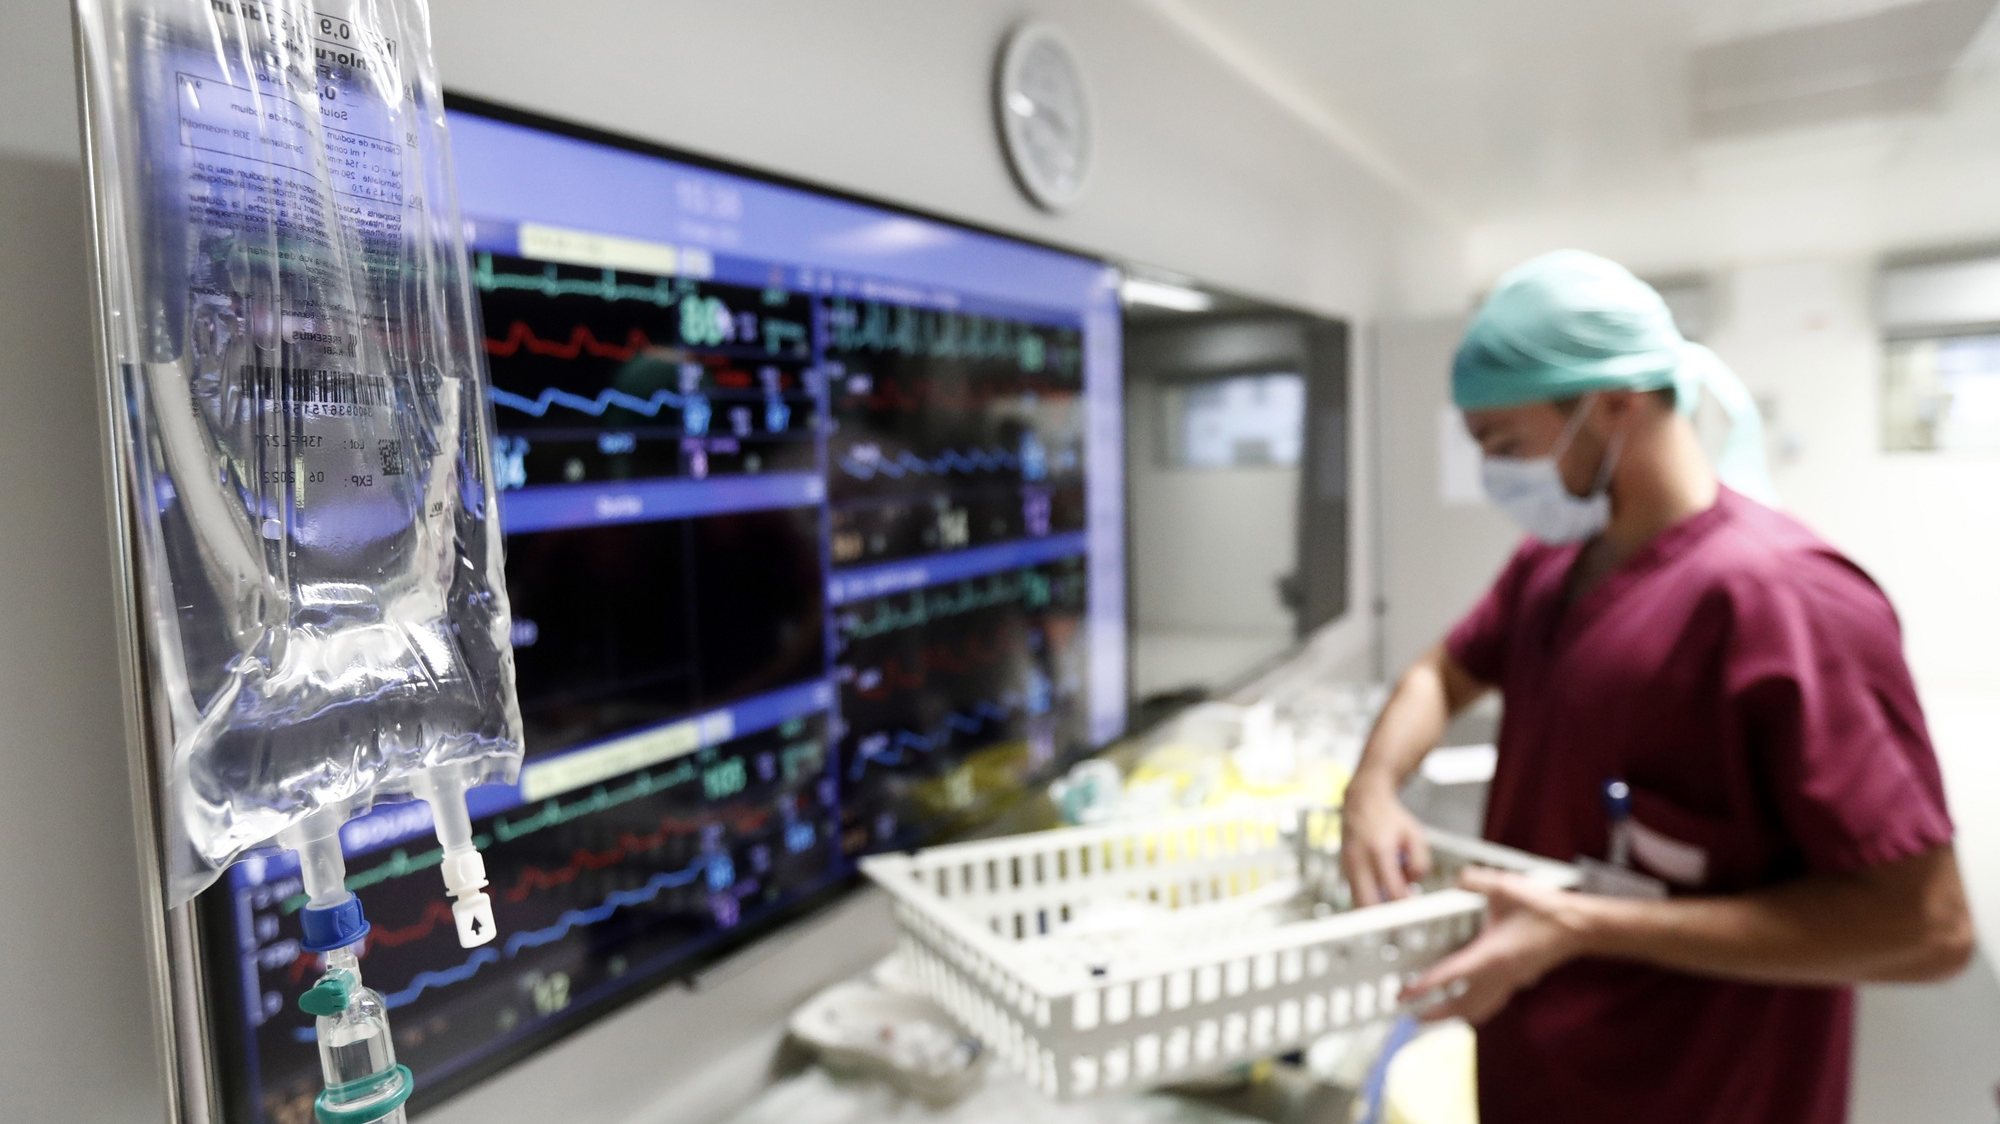 Doutores e enfermeiros a usar equipamento protetor devido à pandemia